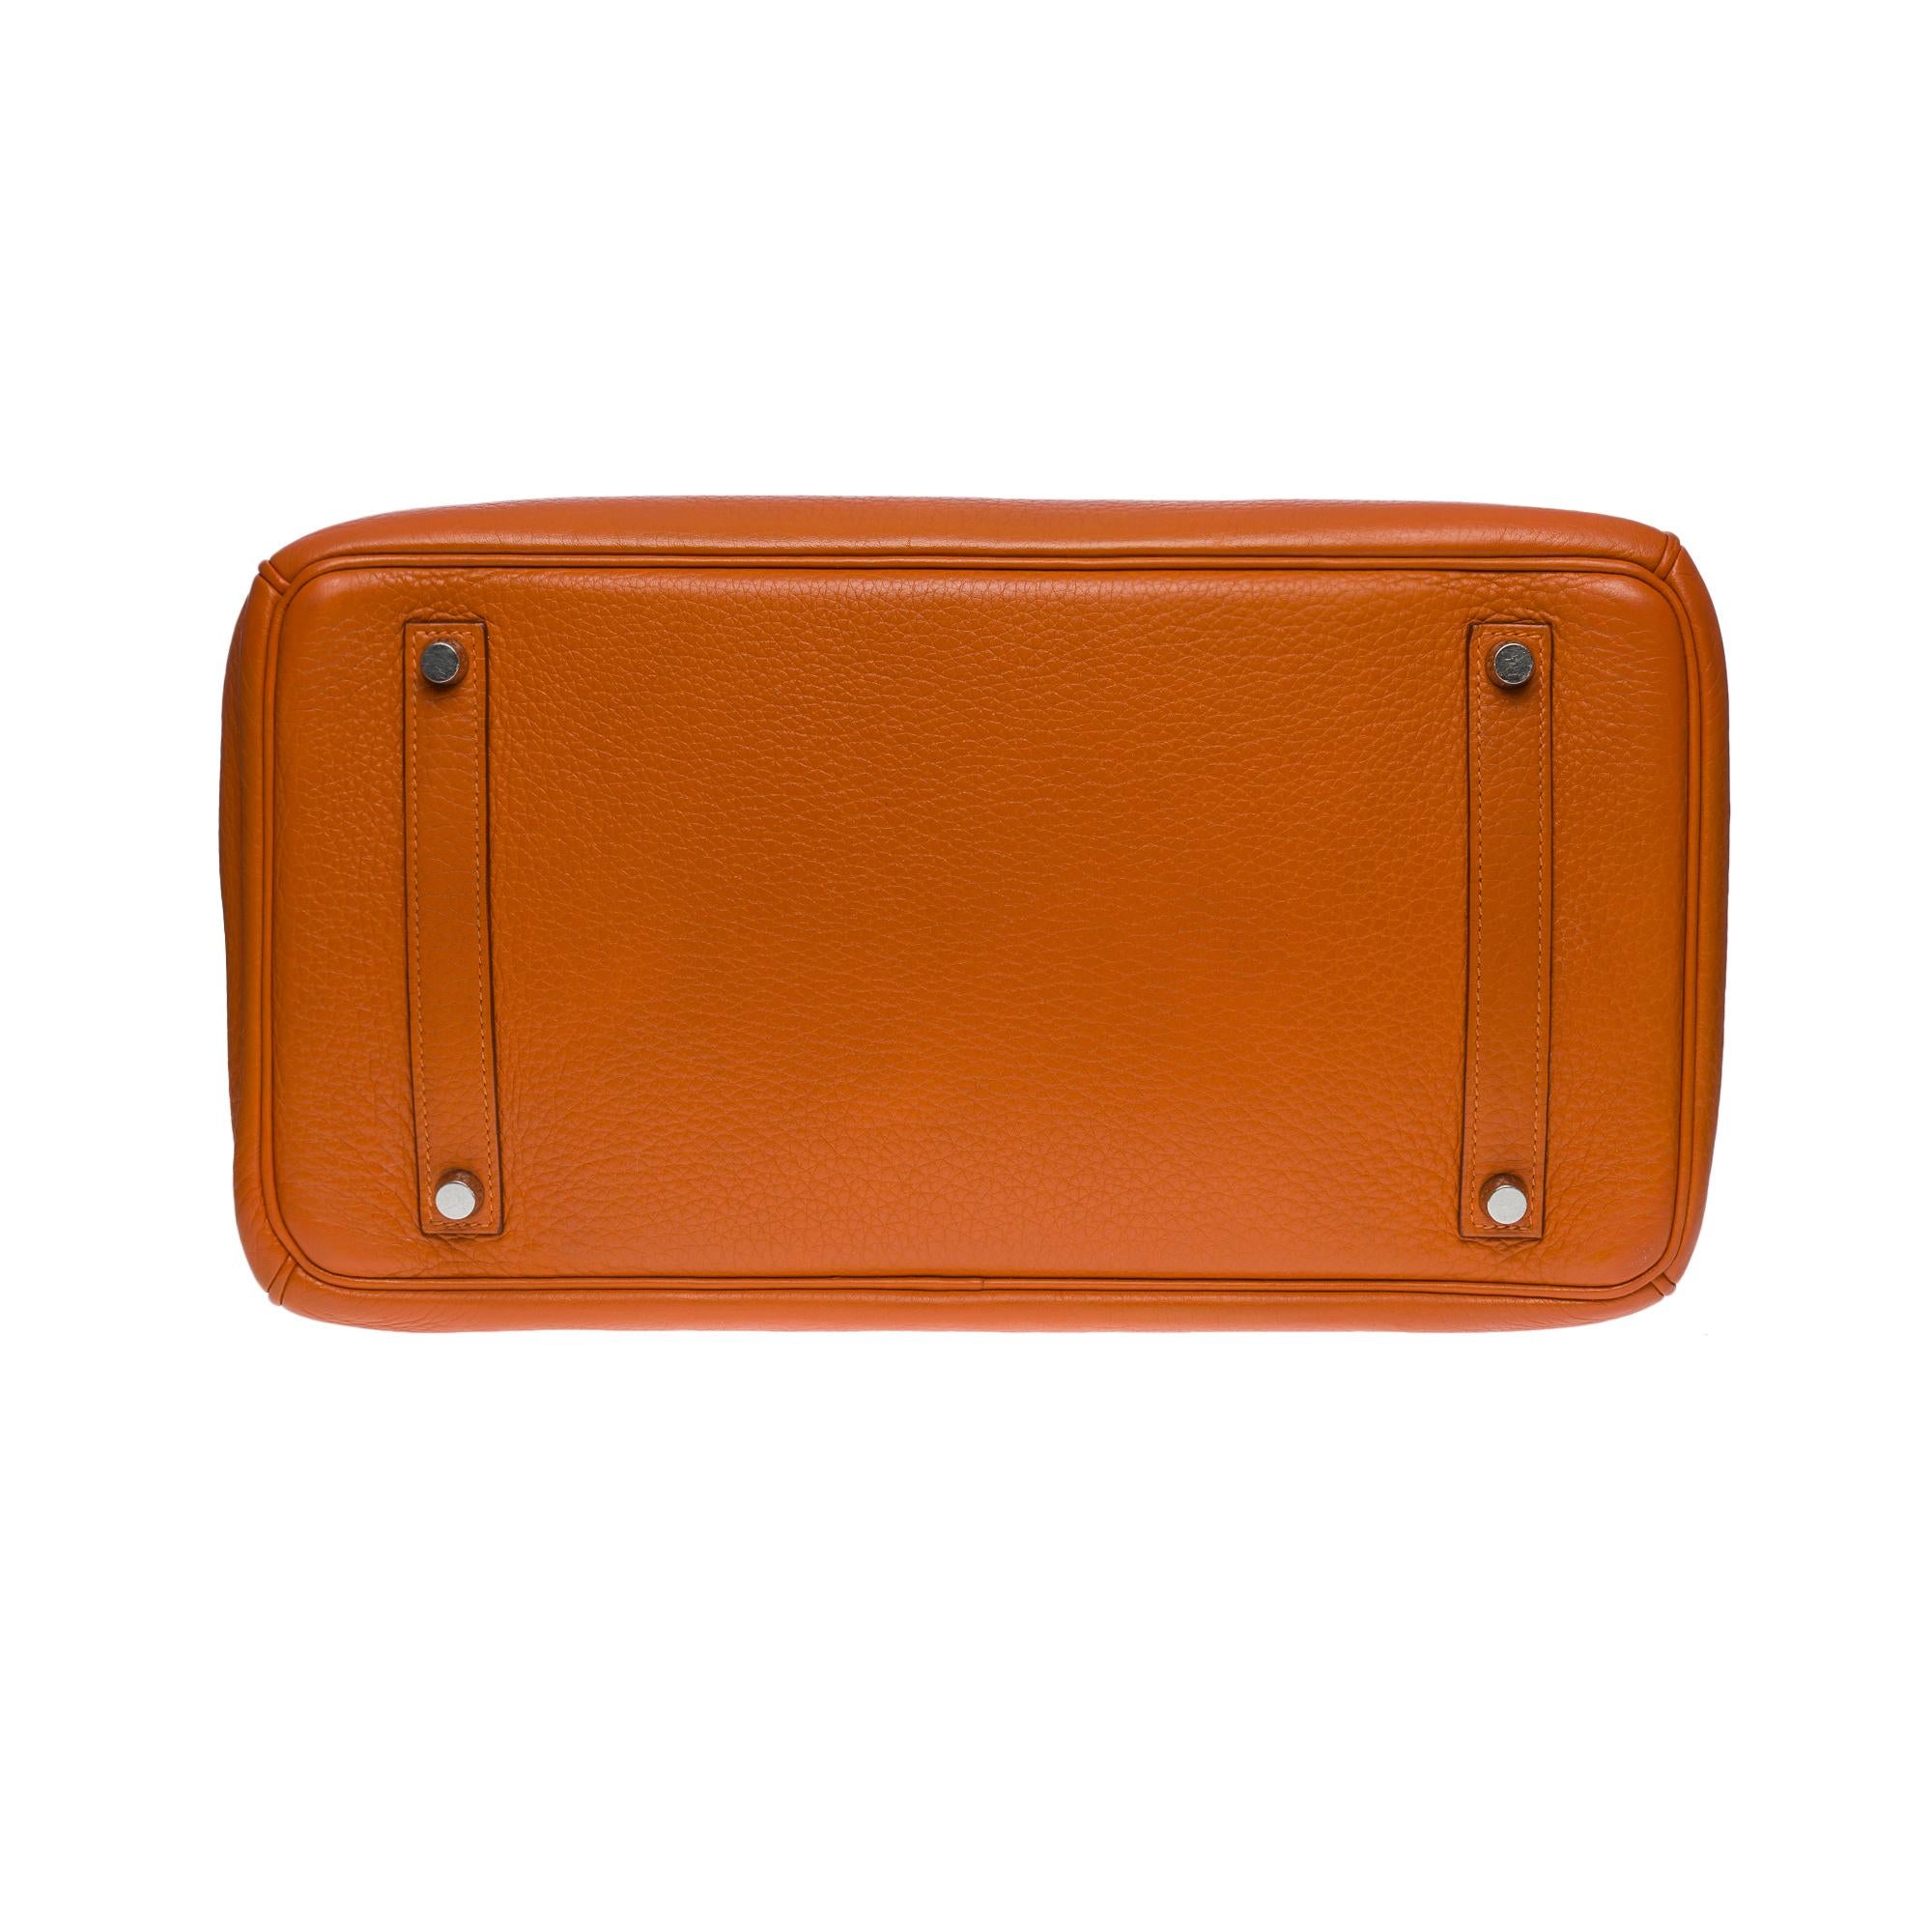 Stunning Hermès Birkin 35 handbag in Orange Togo leather, SHW 4